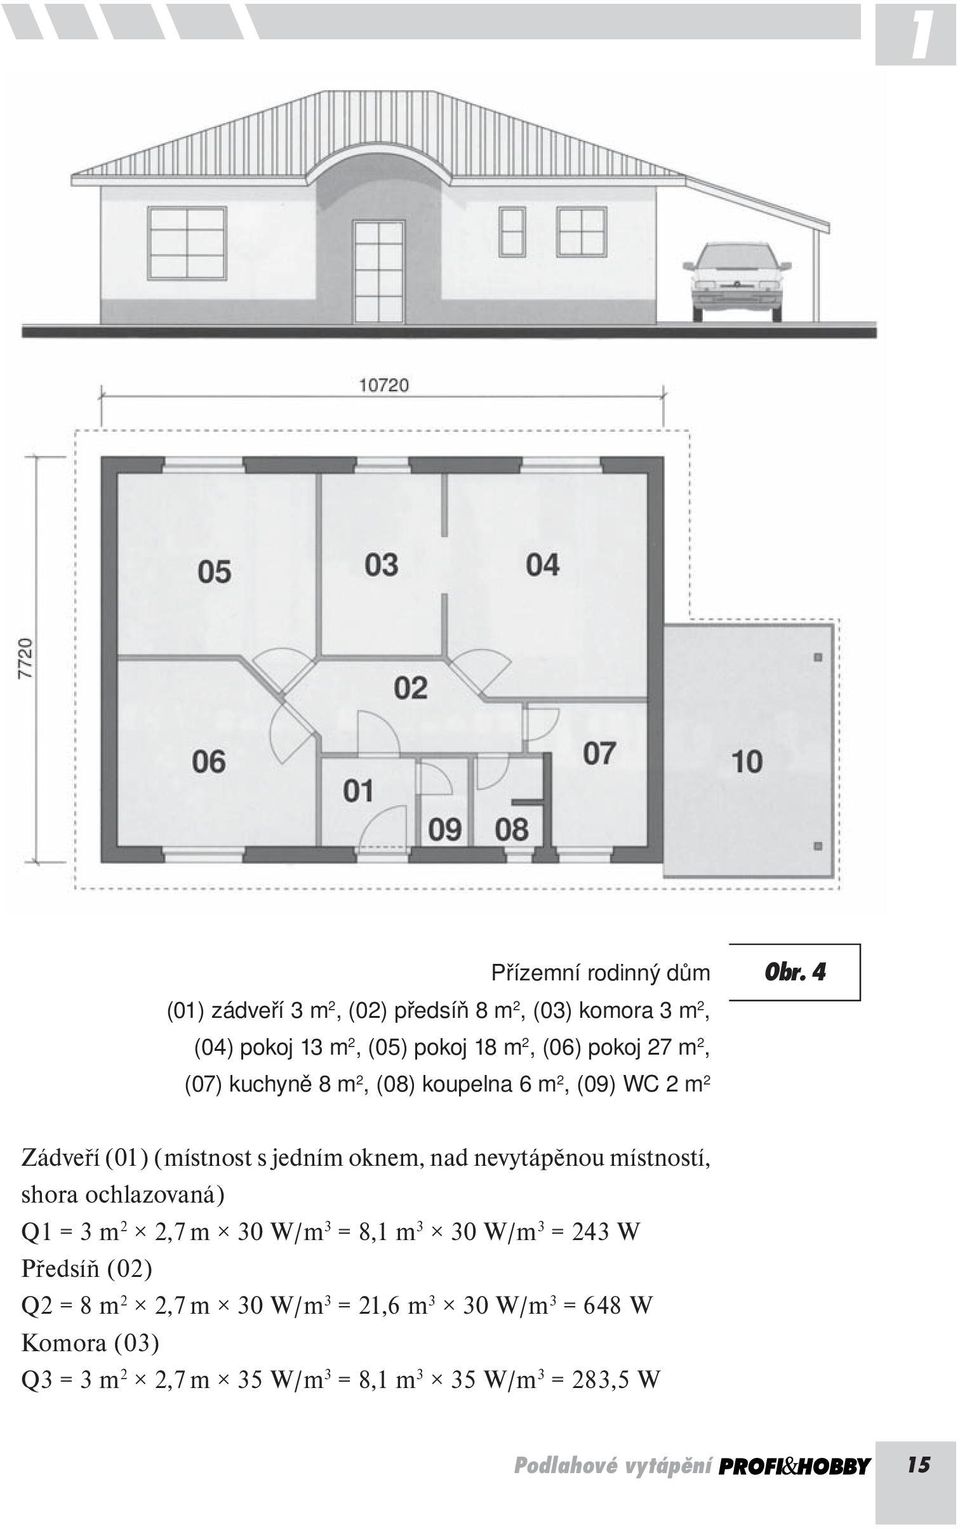 4 Zádveří (01) (místnost s jedním oknem, nad nevytápěnou místností, shora ochlazovaná) Q1 = 3 m 2 2,7 m 30 W/m 3 = 8,1 m 3